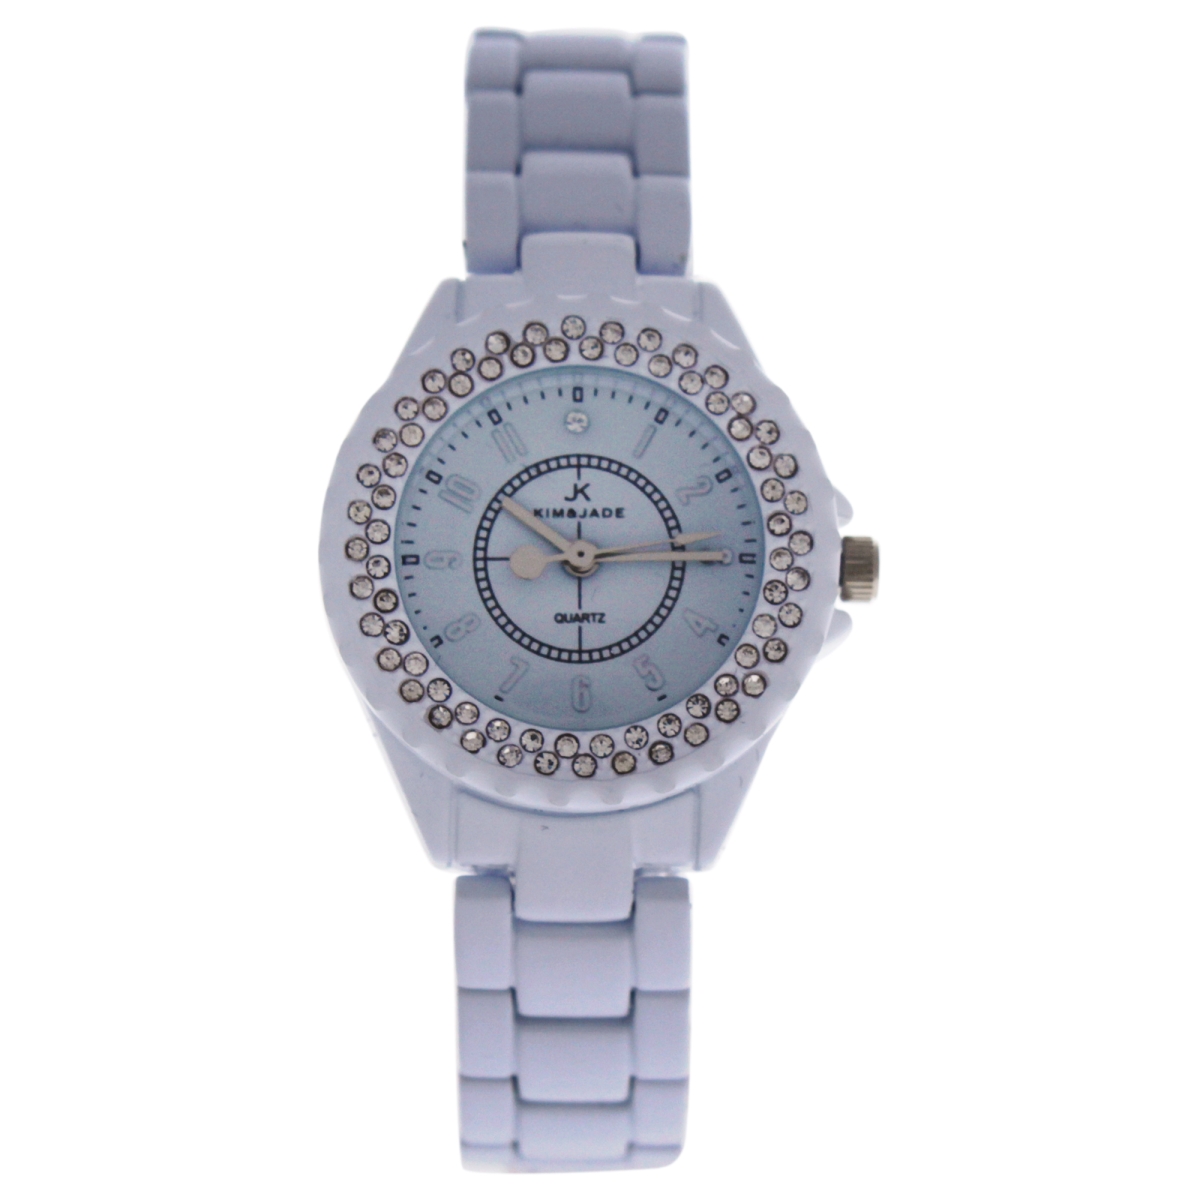 W-wat-1518 White Stainless Steel Bracelet Watch For Women - 2033l-ws